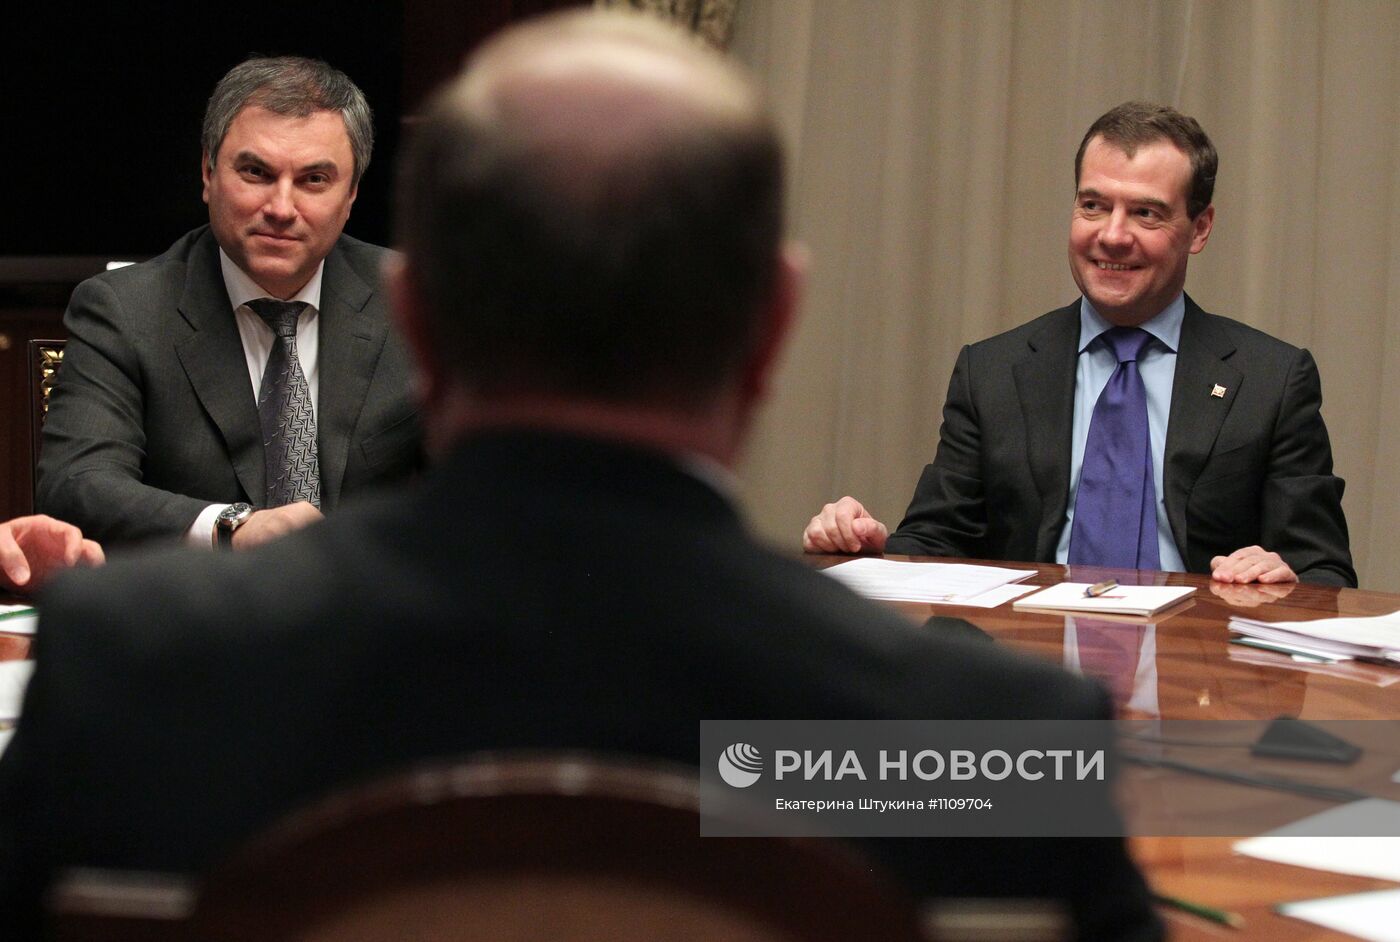 Д.Медведев встретился с руководителями политических партий